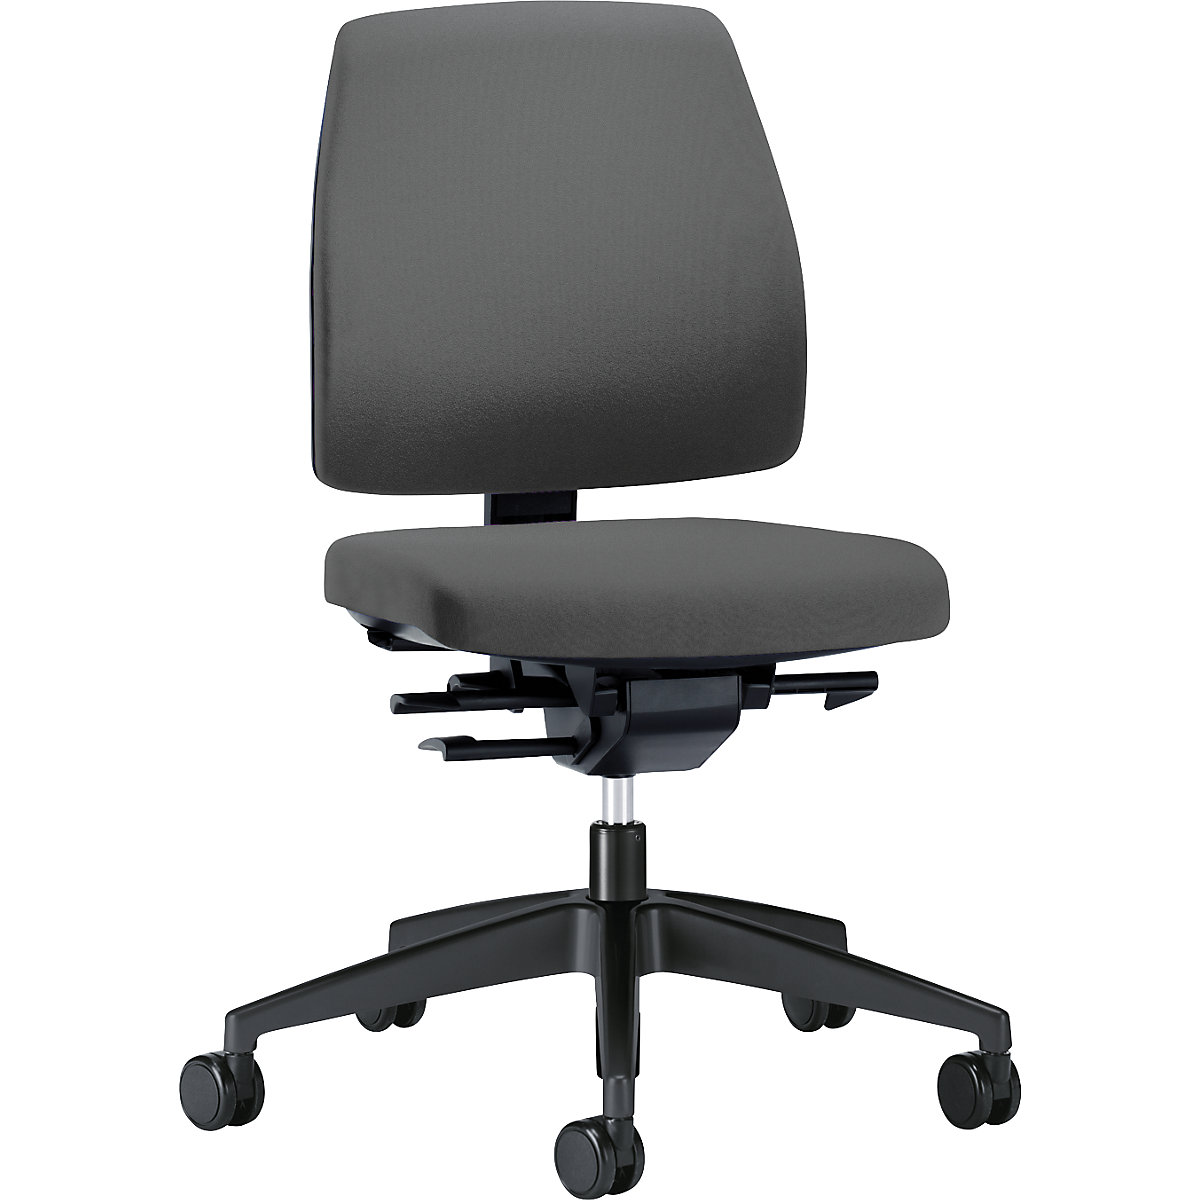 Bürodrehstuhl GOAL, Rückenlehnenhöhe 430 mm interstuhl, Gestell schwarz, mit harten Rollen, eisengrau, Sitztiefe 410 mm